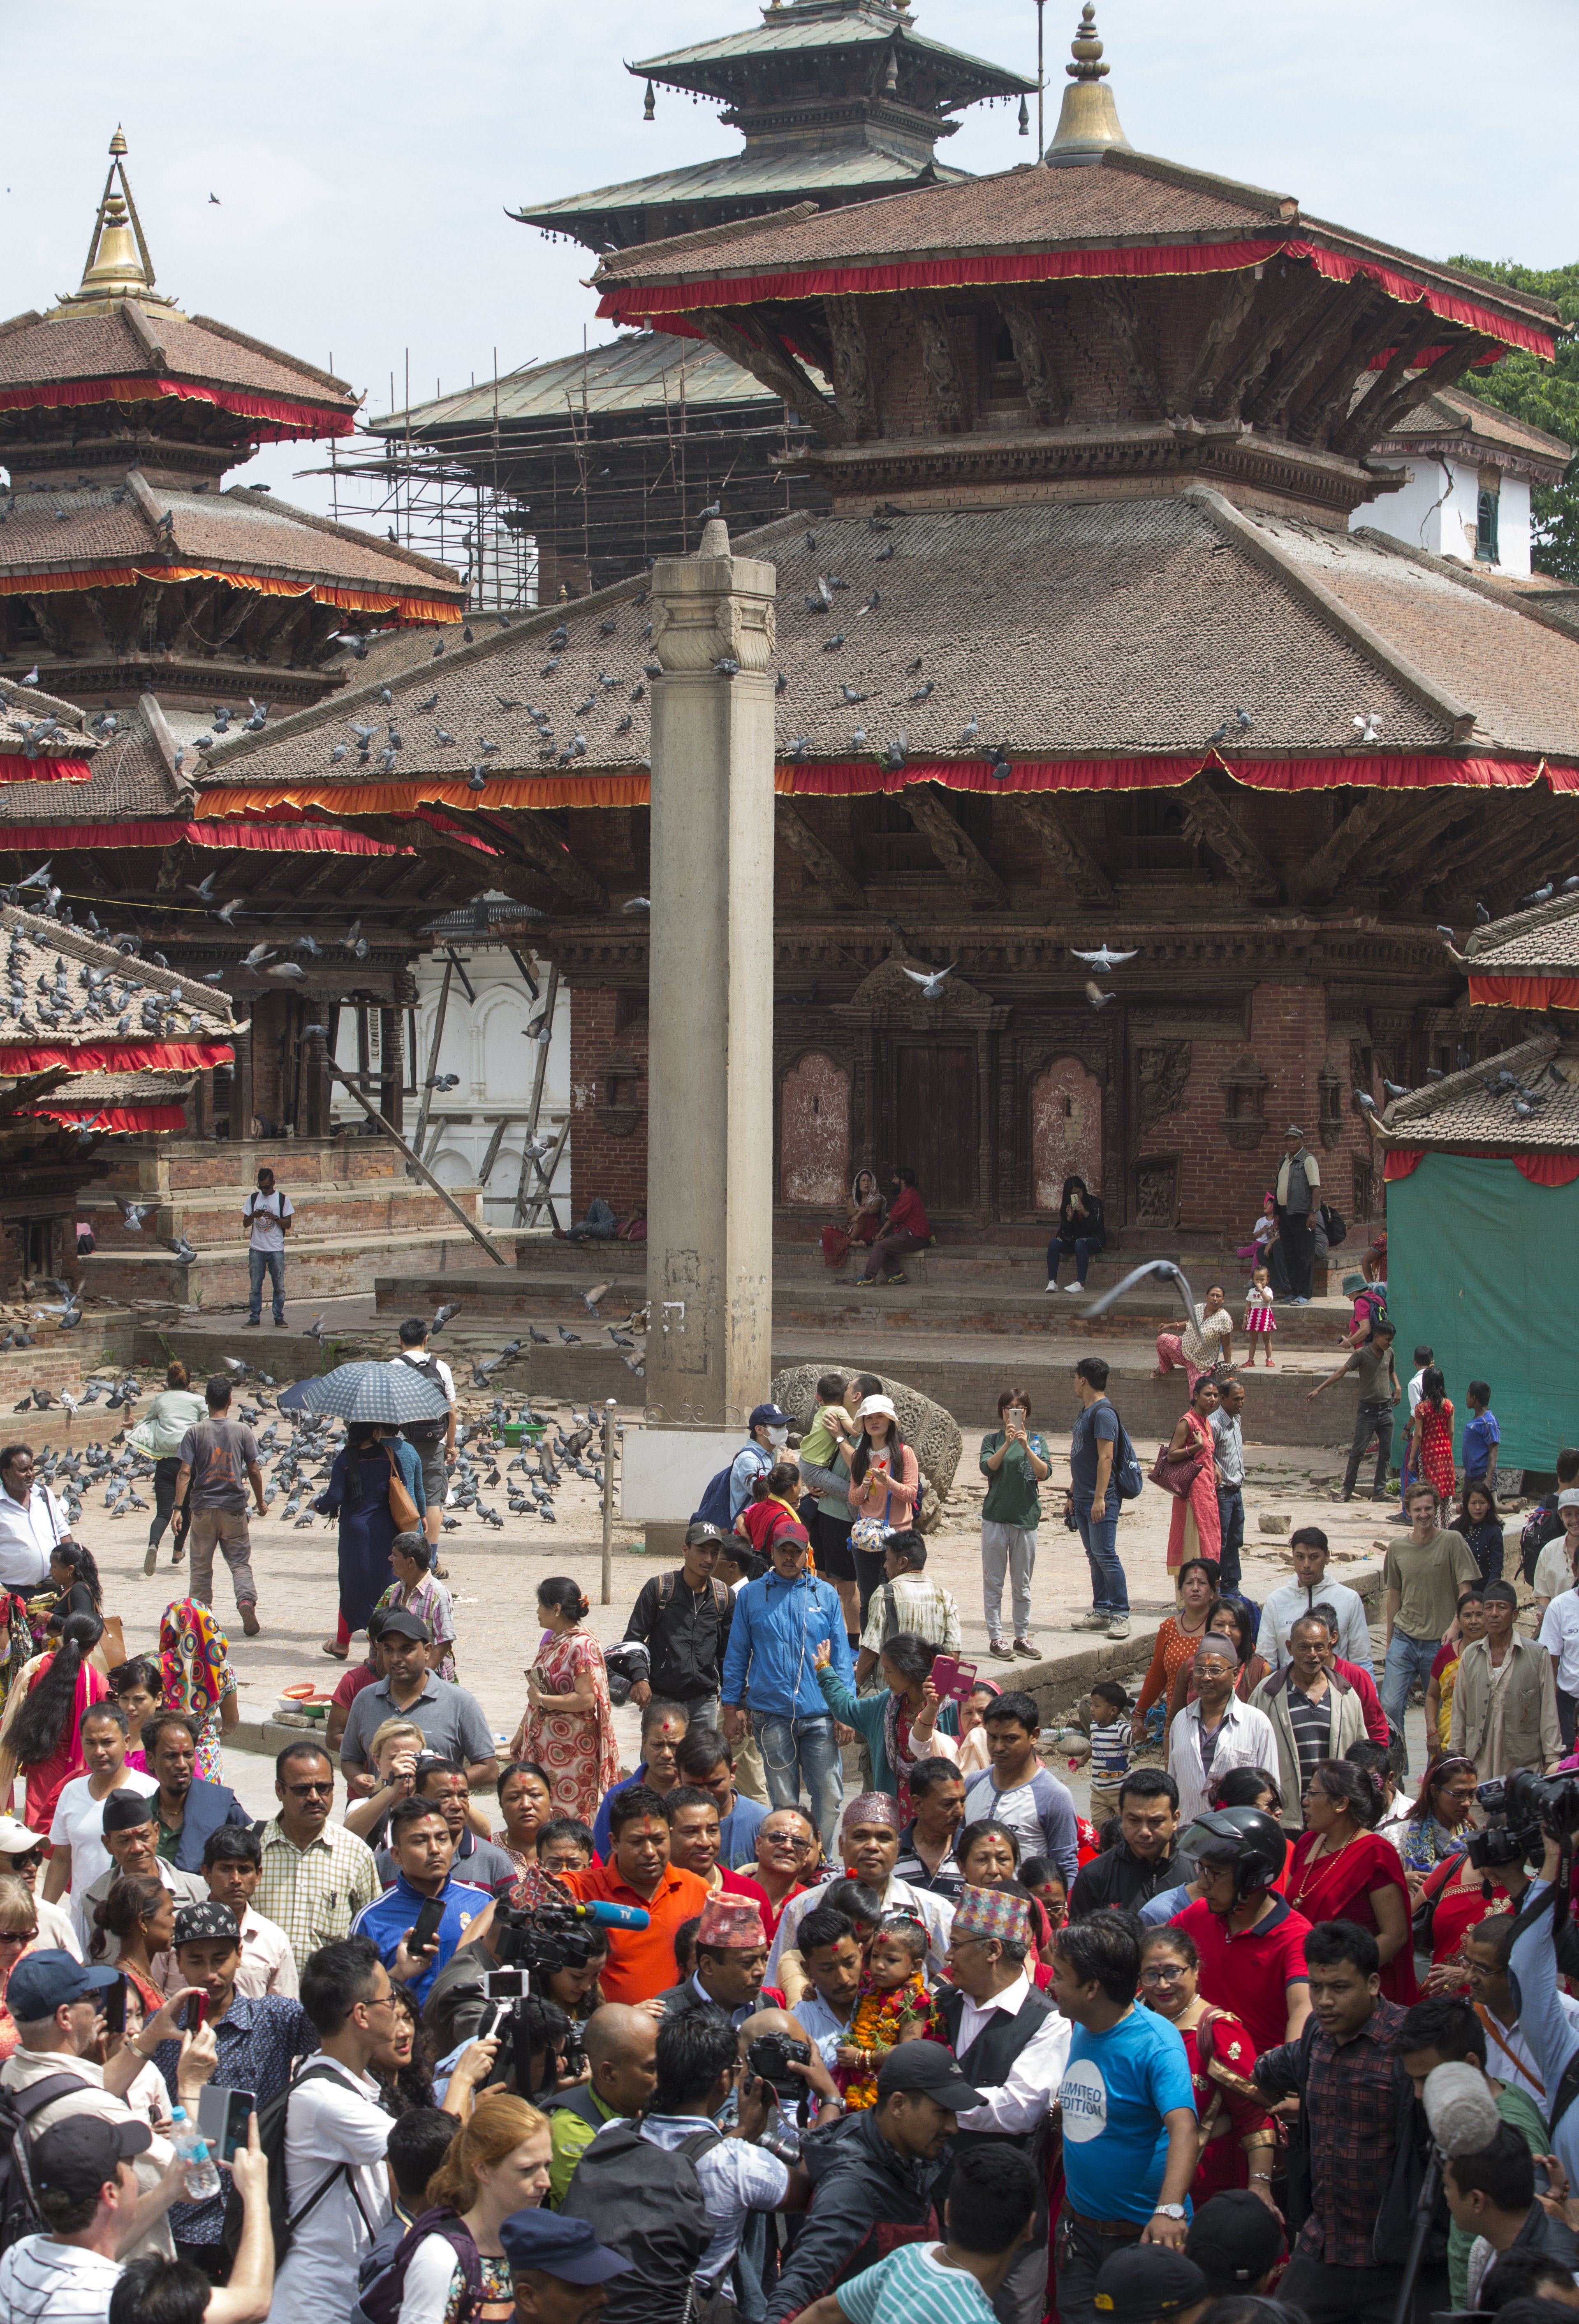 Тригодишната Тришна Шакия стана новата жива богиня на Непал и ще бъде почитана както от индуистите, така и от будистите, предаде Асошиейтед прес. Новата жива богиня беше отнесена с религиозна церемония до храма-дворец в сърцето на непалската столица, където ще живее до пубертета си. Стотици хора се струпаха, за да видят момичето, облечено в червена рокля и нагиздено с гирлянди от цветя.